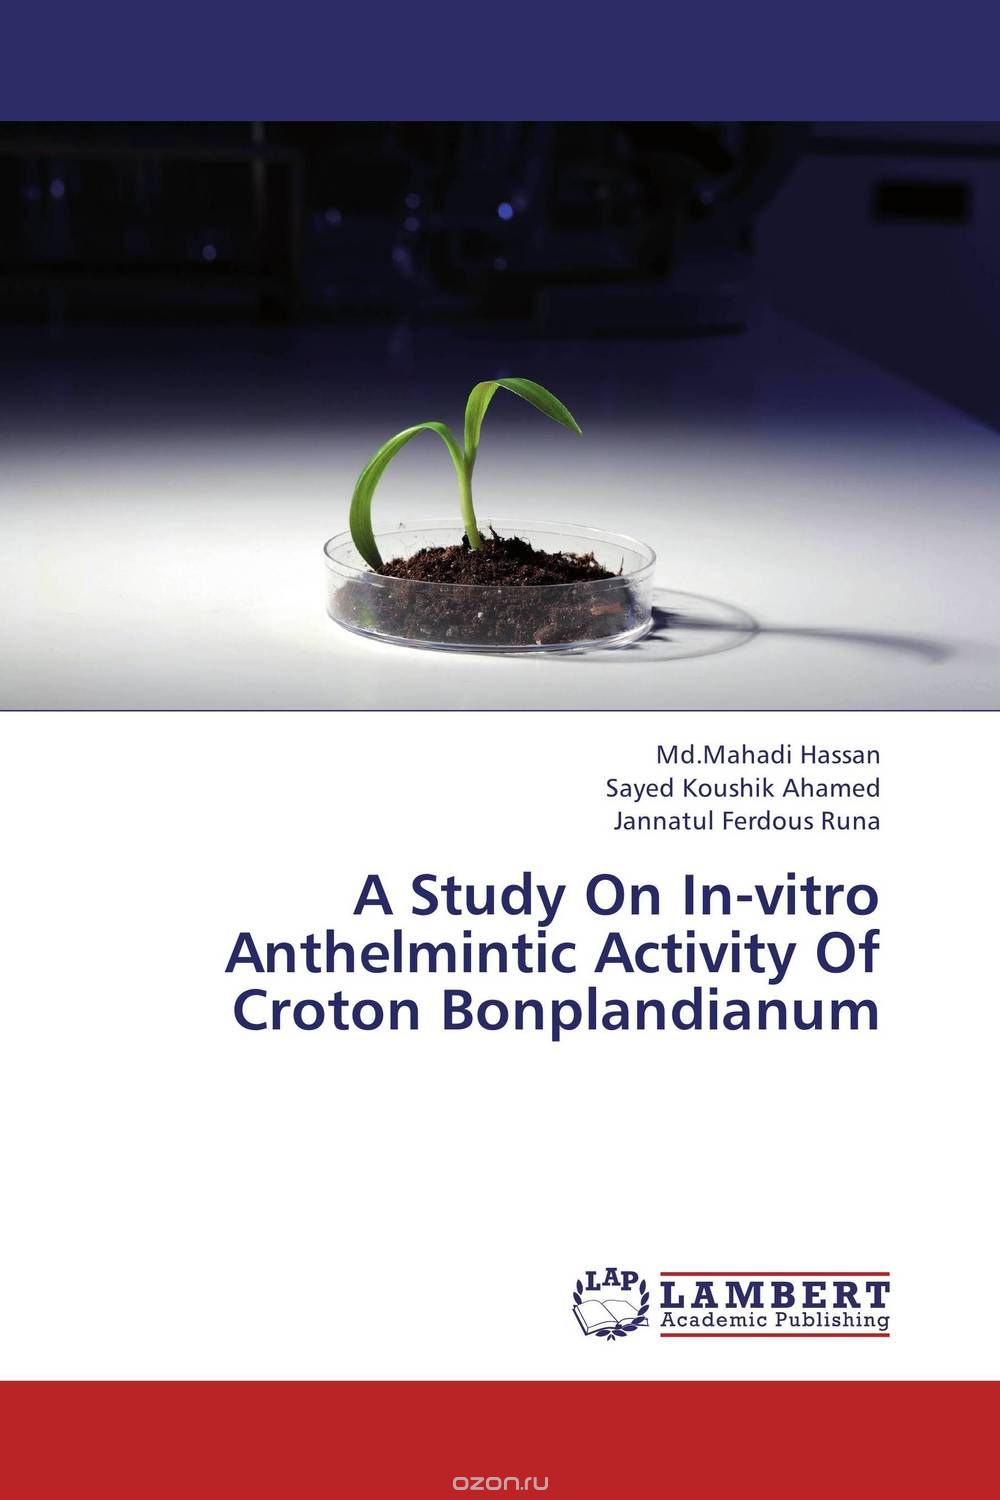 Скачать книгу "A Study On In-vitro Anthelmintic Activity Of Croton Bonplandianum"